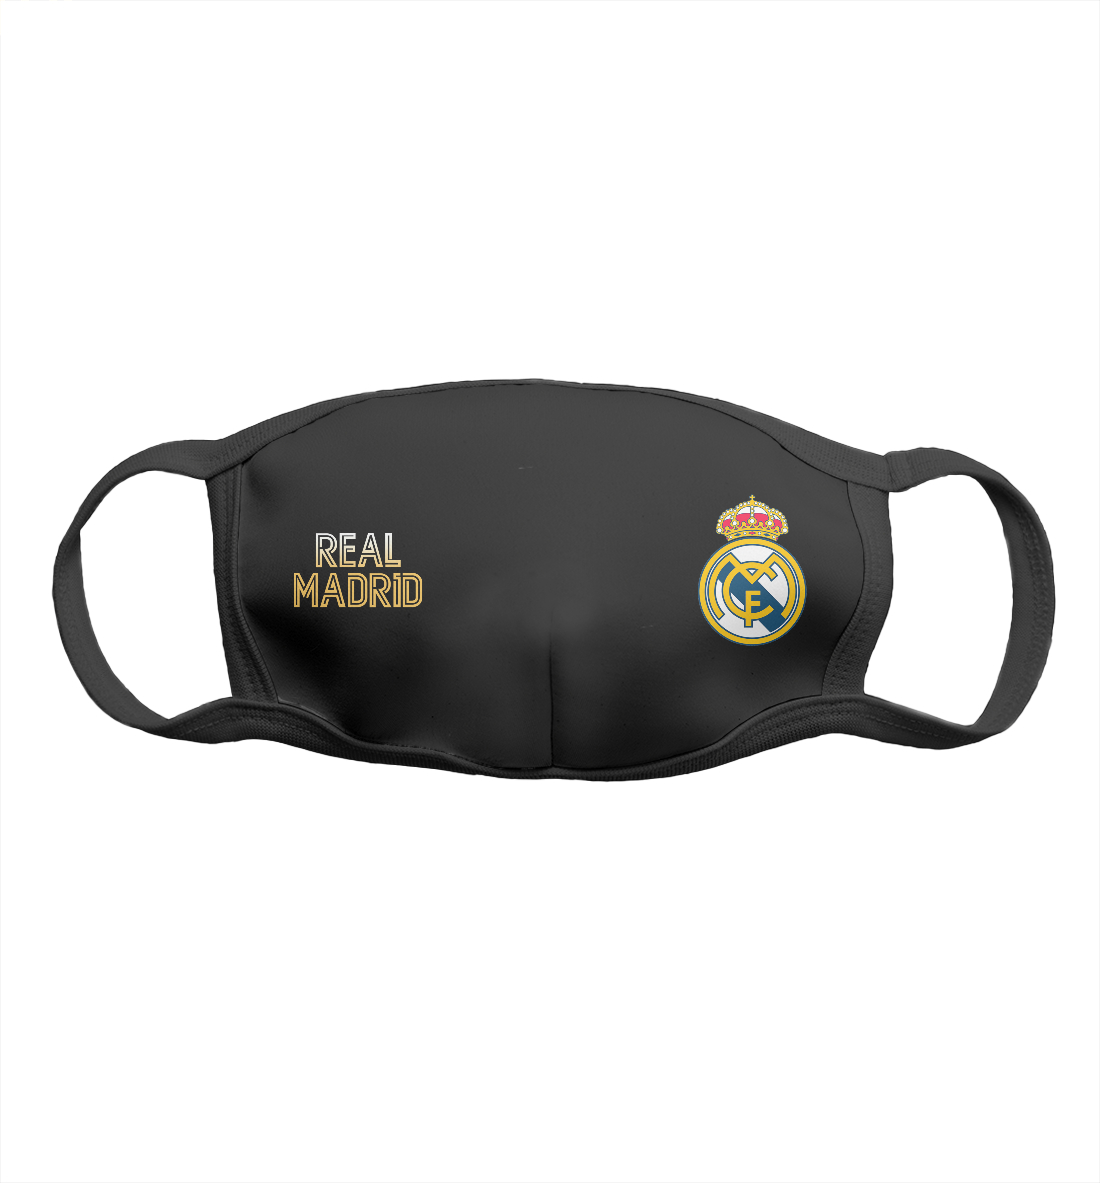 Детская Маска Real Madrid Gold для девочек, артикул REA-581283-msk-1mp